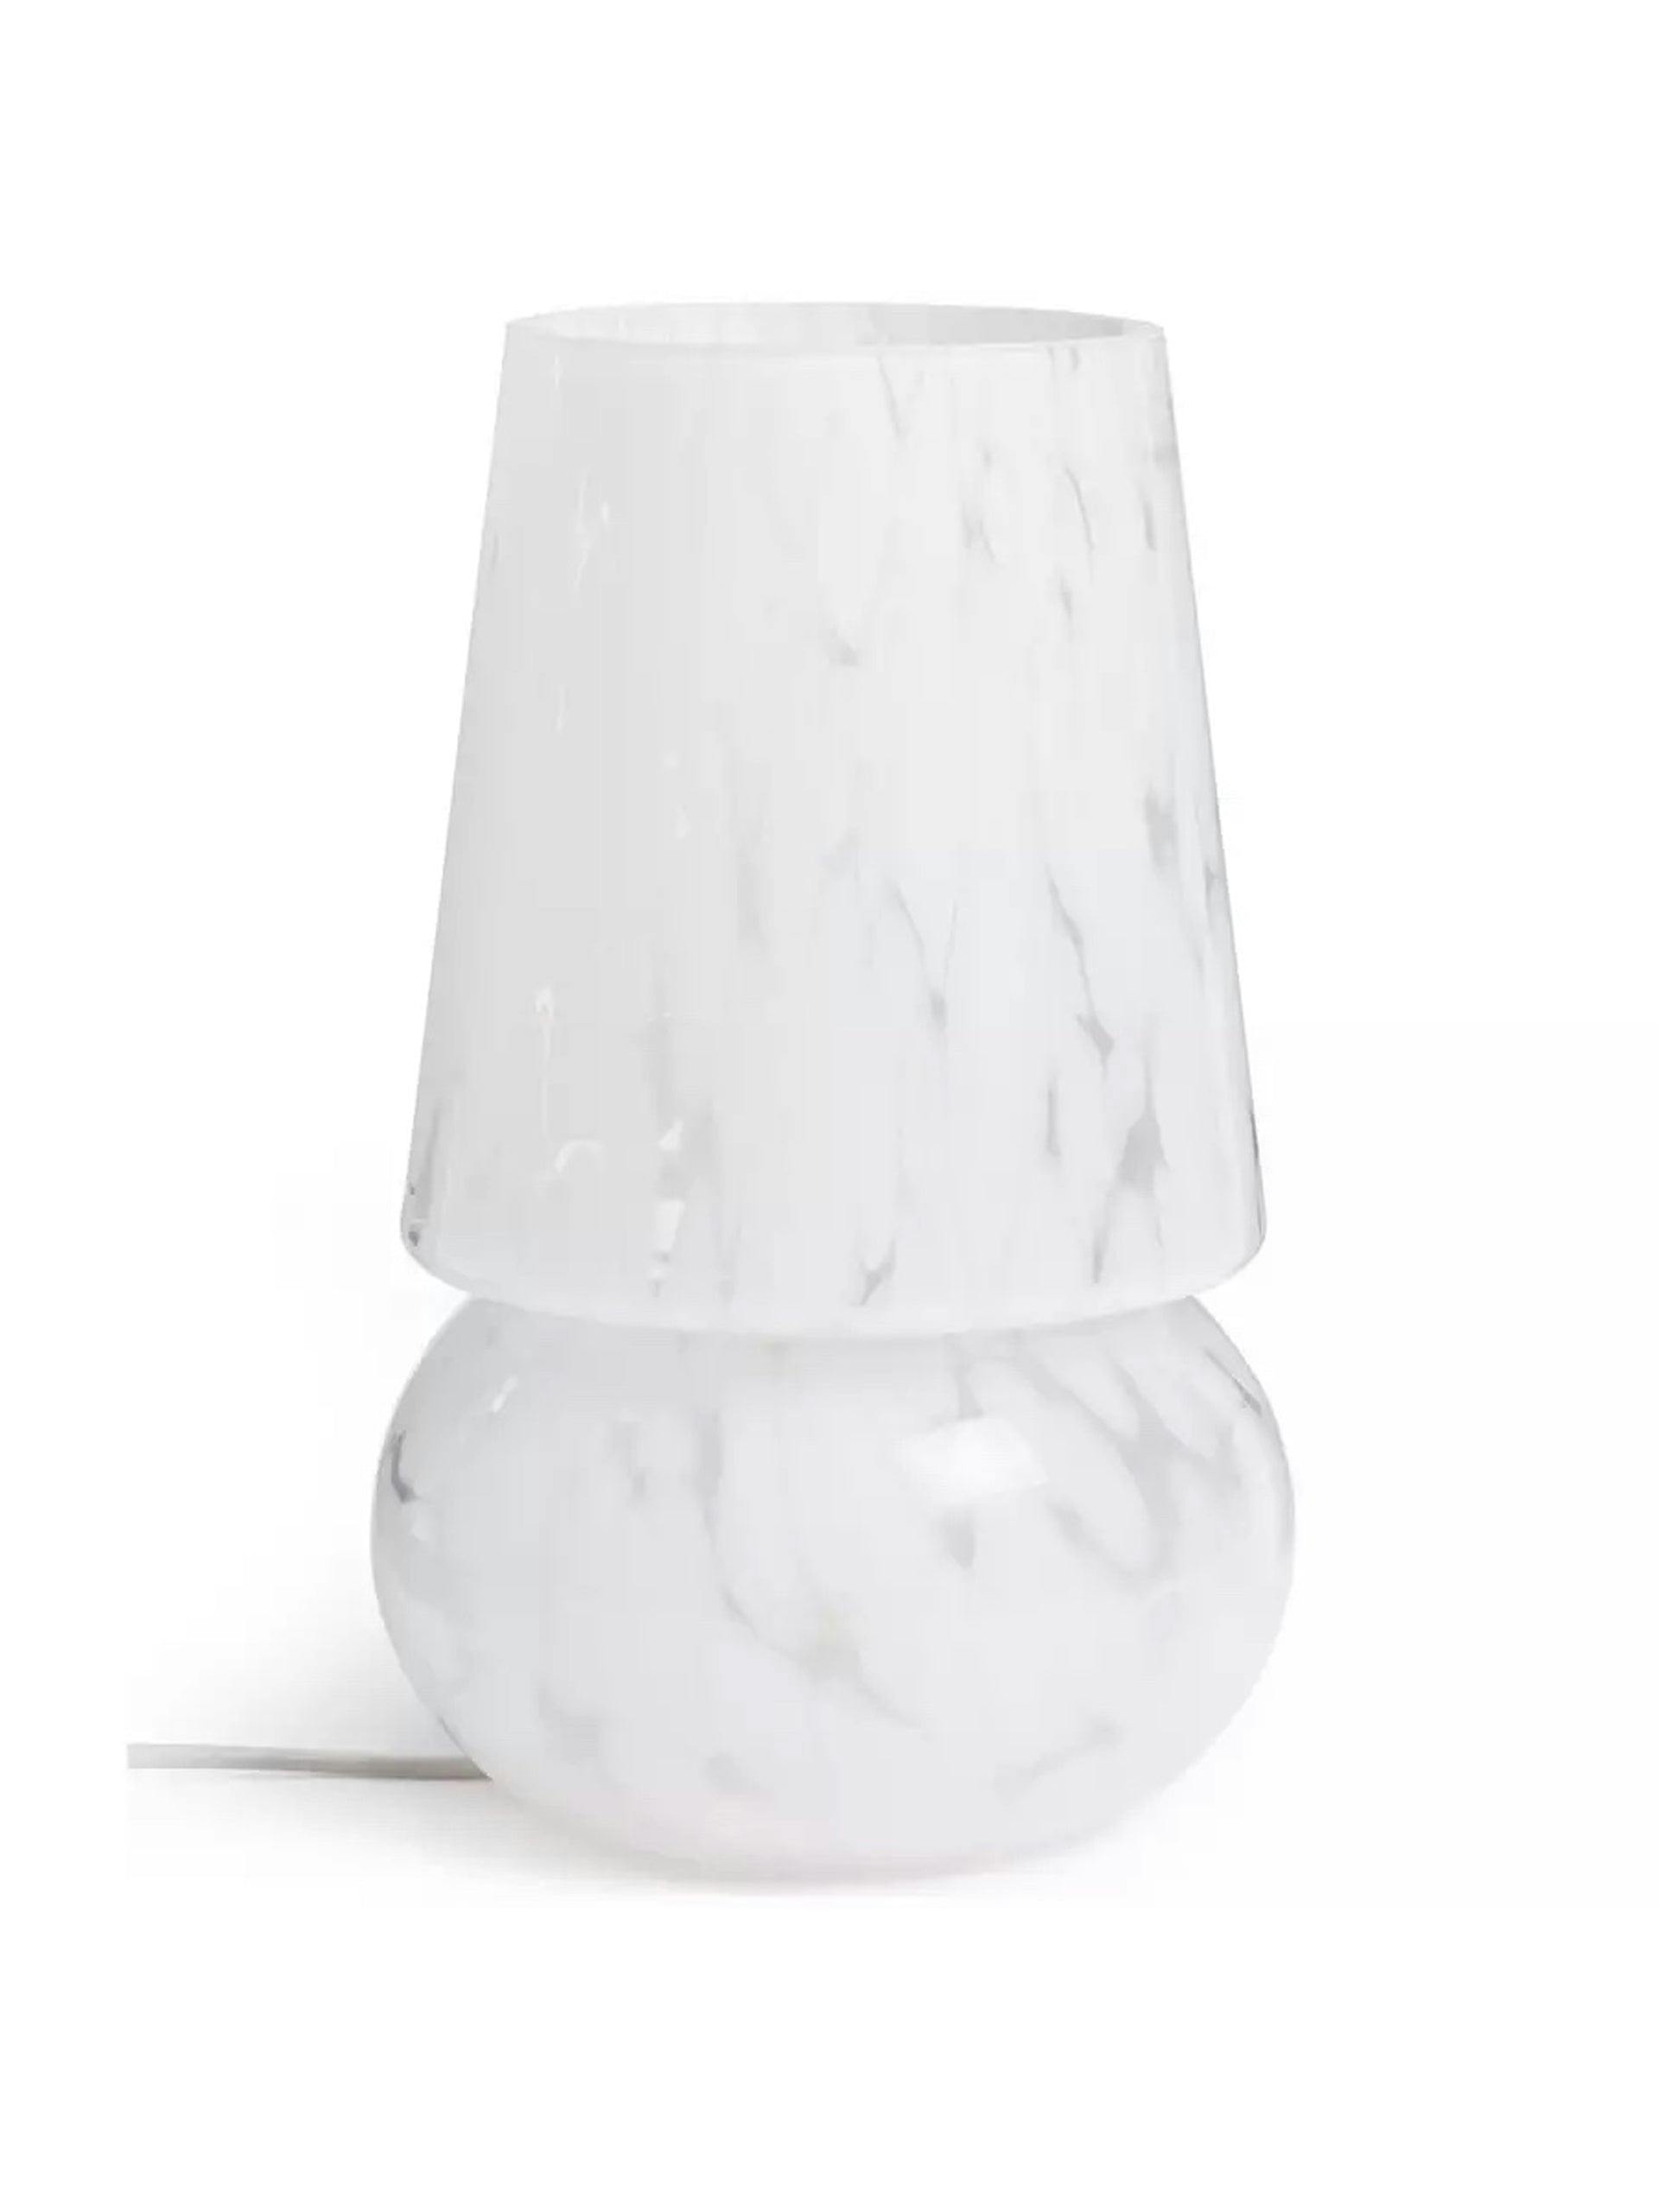 White glass confetti table lamp